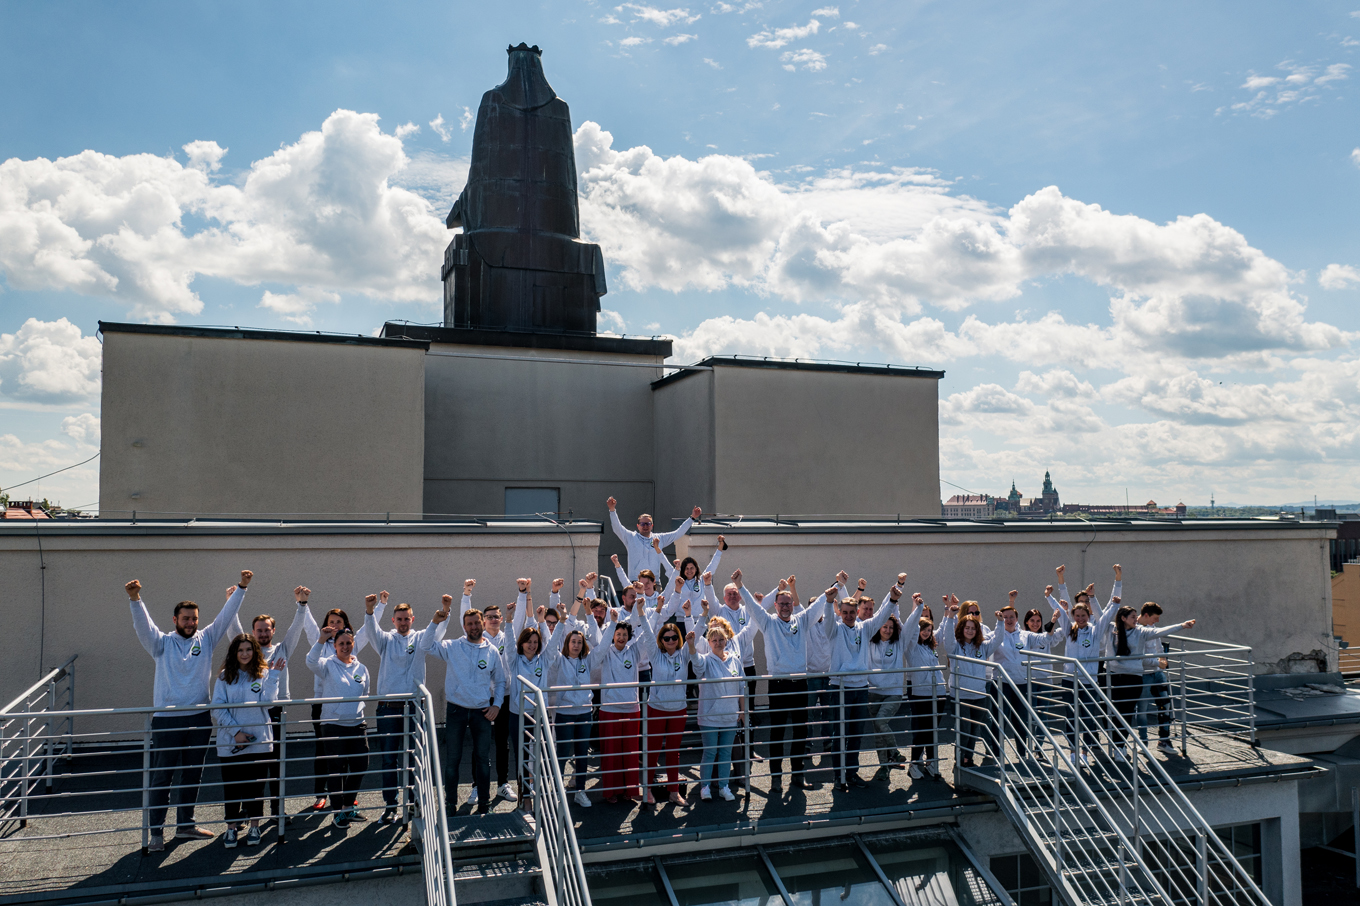 Pracownicy WILiGZ stoją na dachu budynku ubrani w jednolite szare bluzy wydziałowe z podniesionymi rękoma. W tle widać niebo oraz panorame Krakowa.